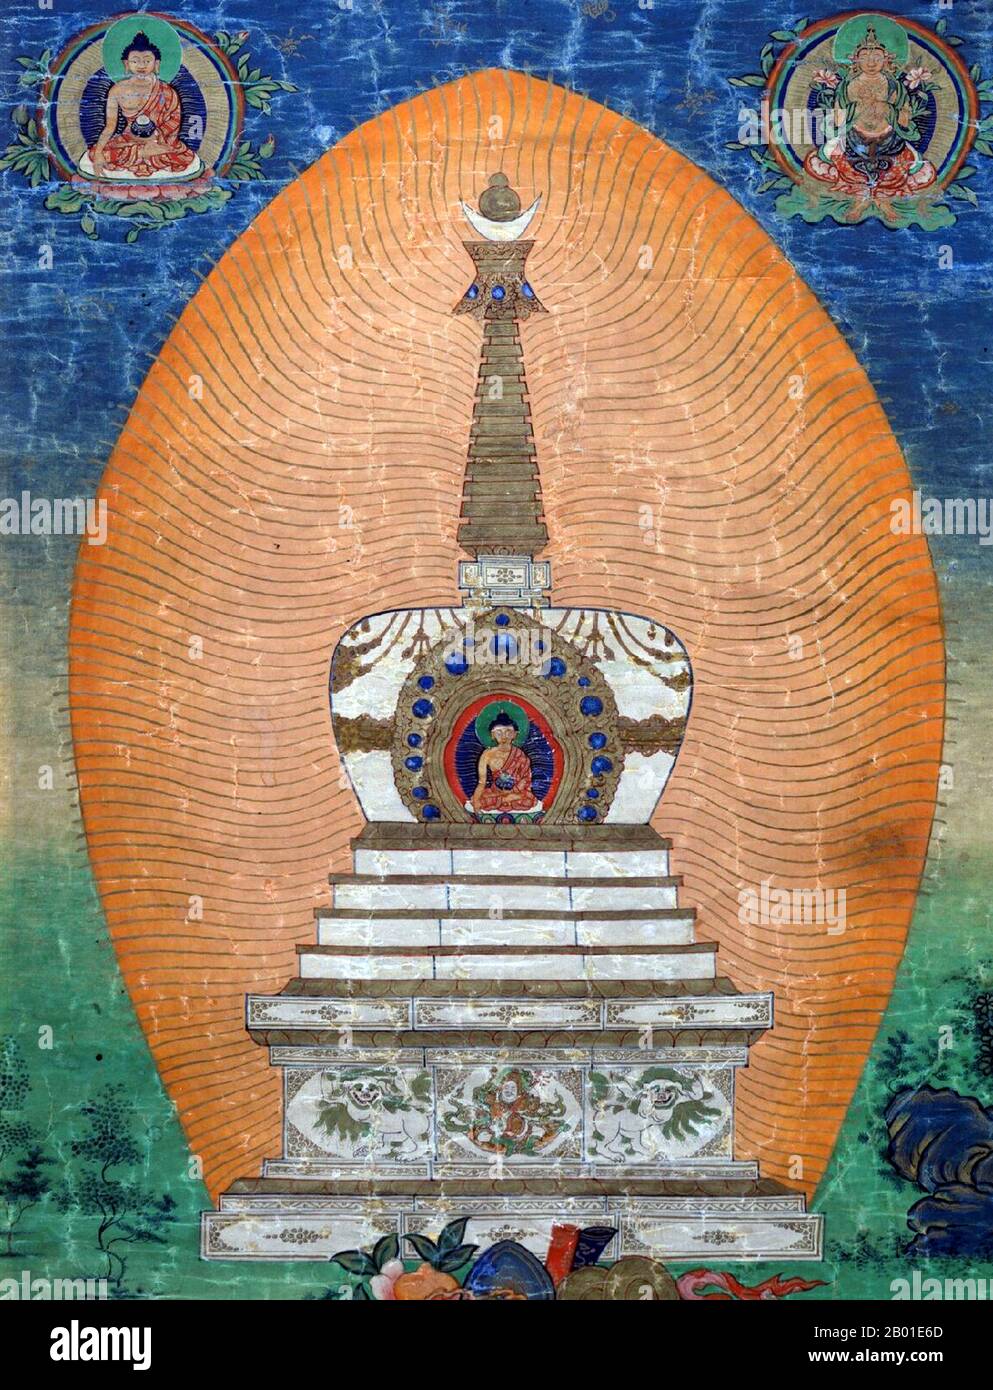 Chine/Tibet : peinture thangka d'un chorten bouddhiste ou stupa, Kham, 18th siècle. Un stupa (Sanskrit: stūpa, Pāli: thūpa, signifiant littéralement "tas") est une structure de type monticule contenant des reliques bouddhistes, typiquement les restes de Bouddha, utilisé par les bouddhistes comme un lieu de culte. Le terme « chorten » est utilisé pour un stupa dans le bouddhisme tibétain, notamment au Tibet, au Bhoutan, au Sikkim, dans certaines parties du Népal et en Mongolie. Les stupas sont une forme ancienne de mandala. Banque D'Images